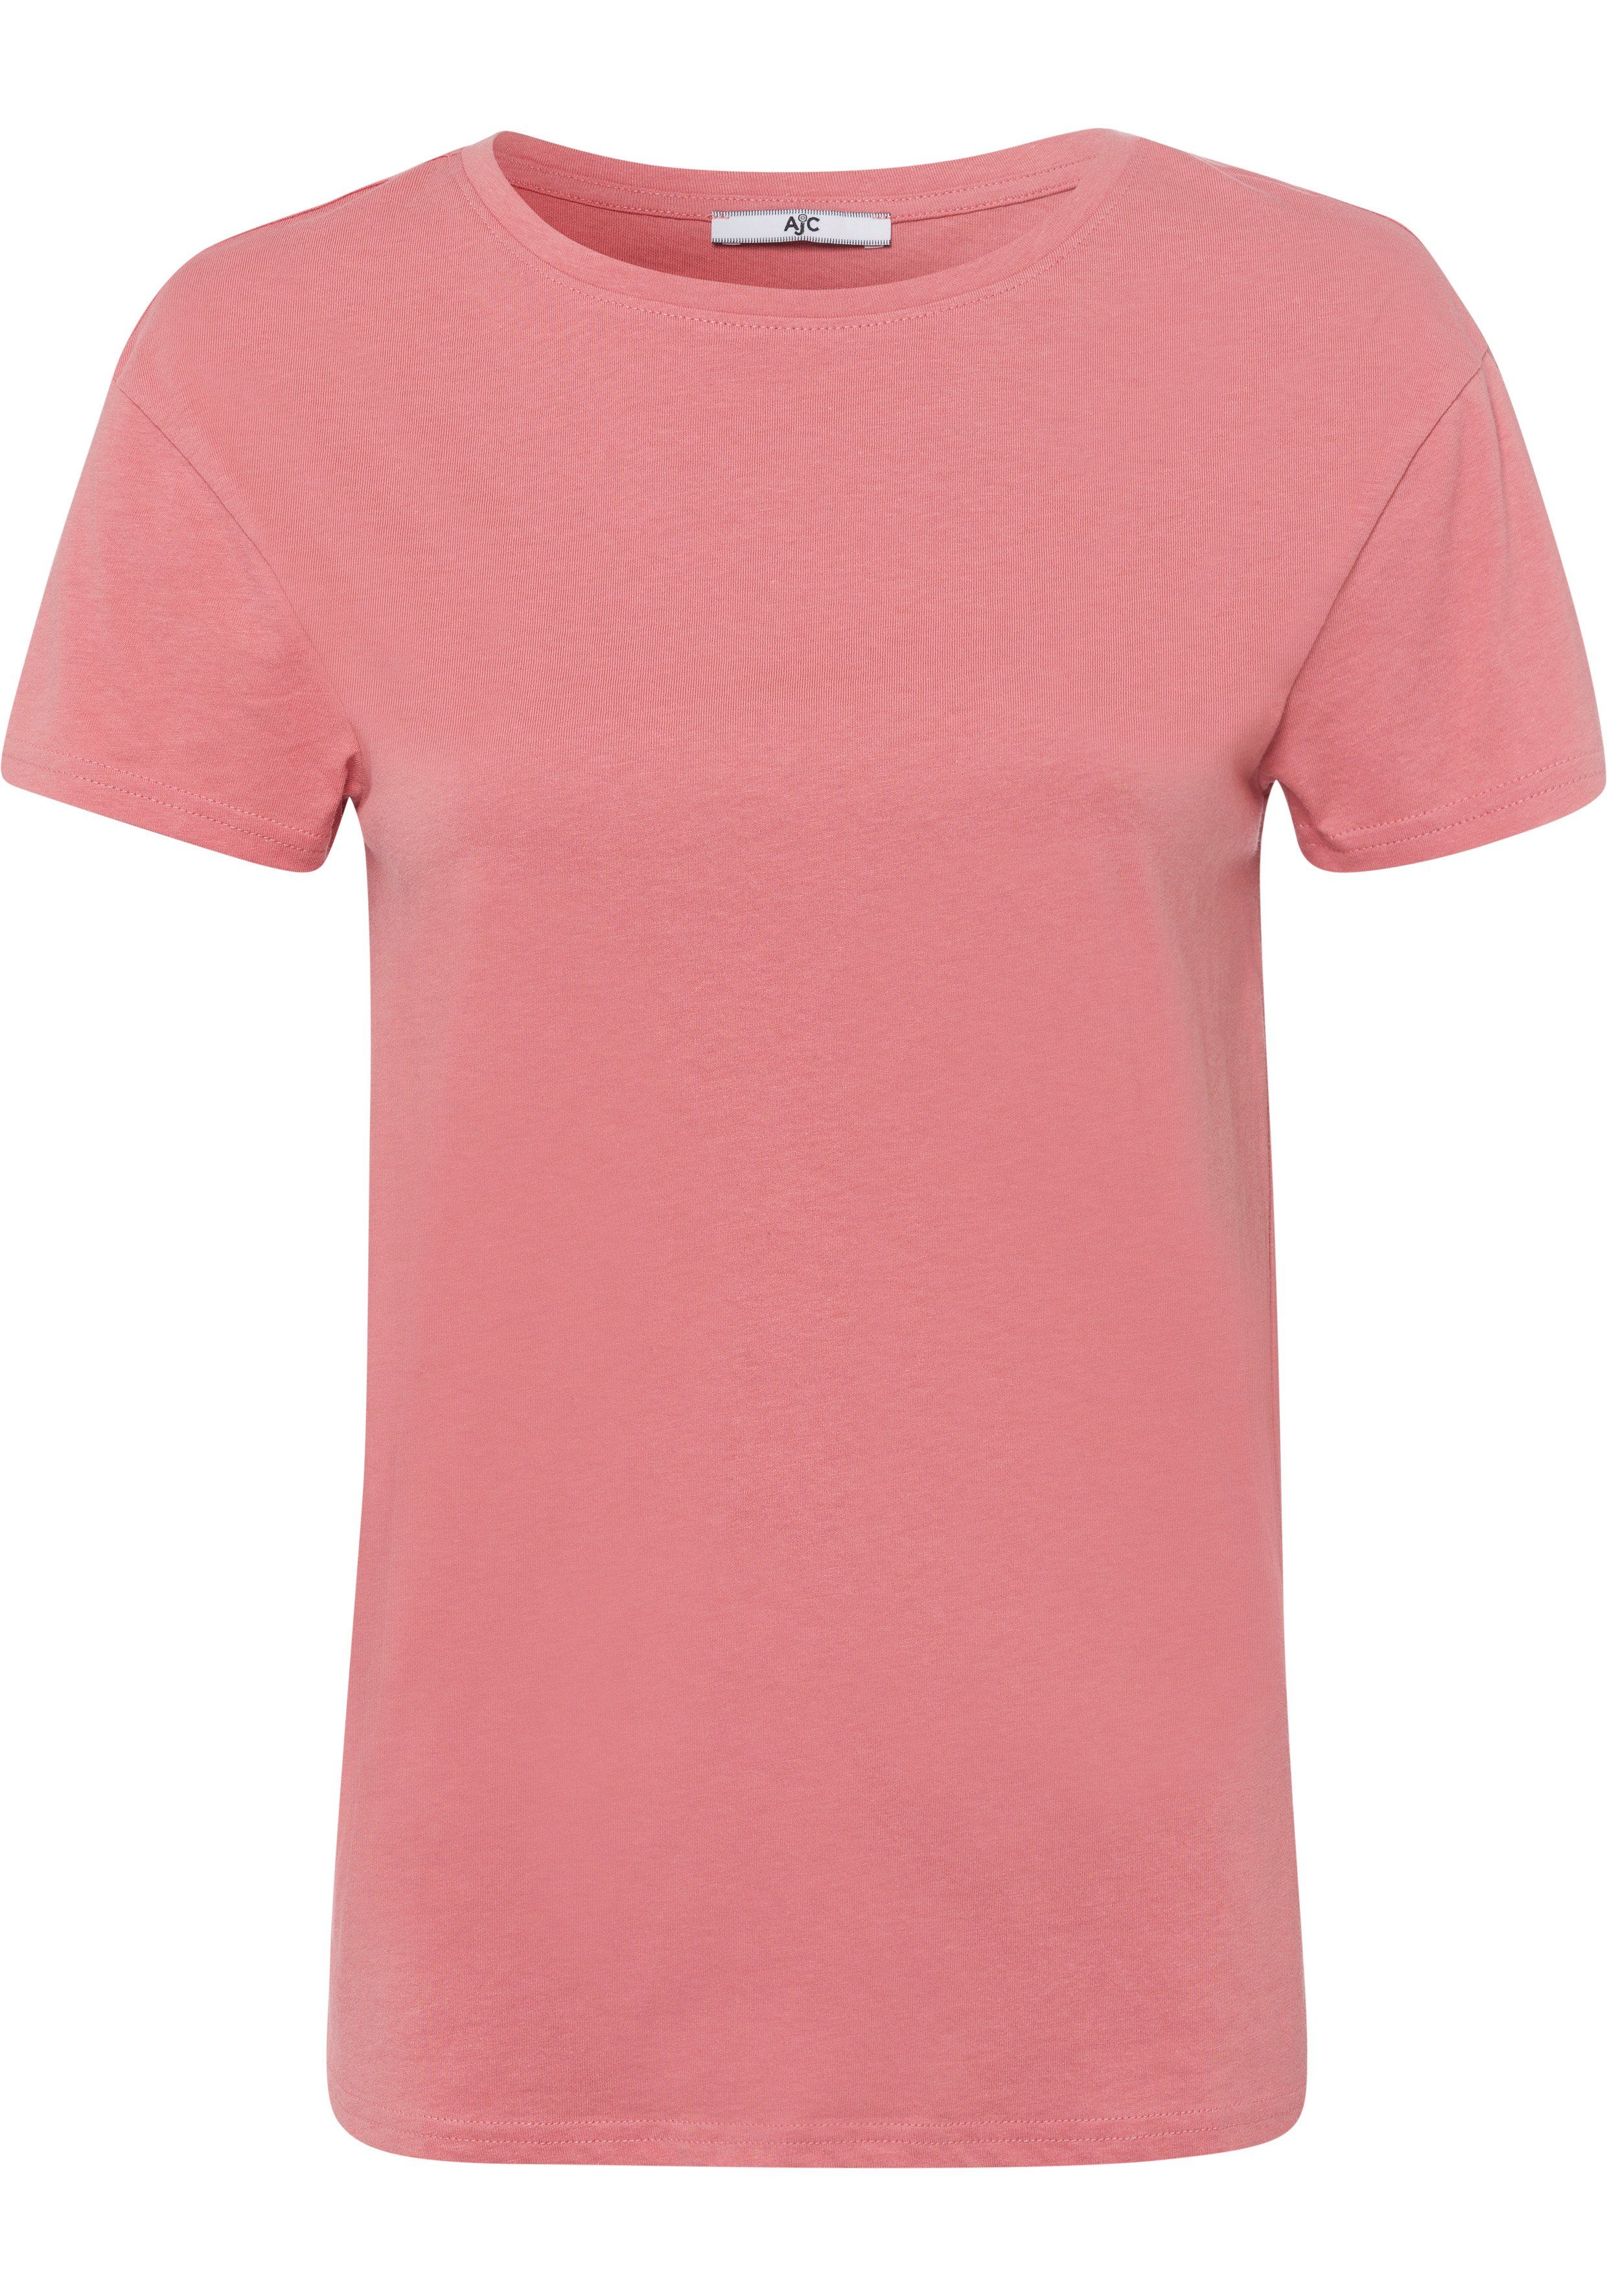 AJC T-Shirt im trendigen Oversized-Look KOLLEKTION lachs NEUE 